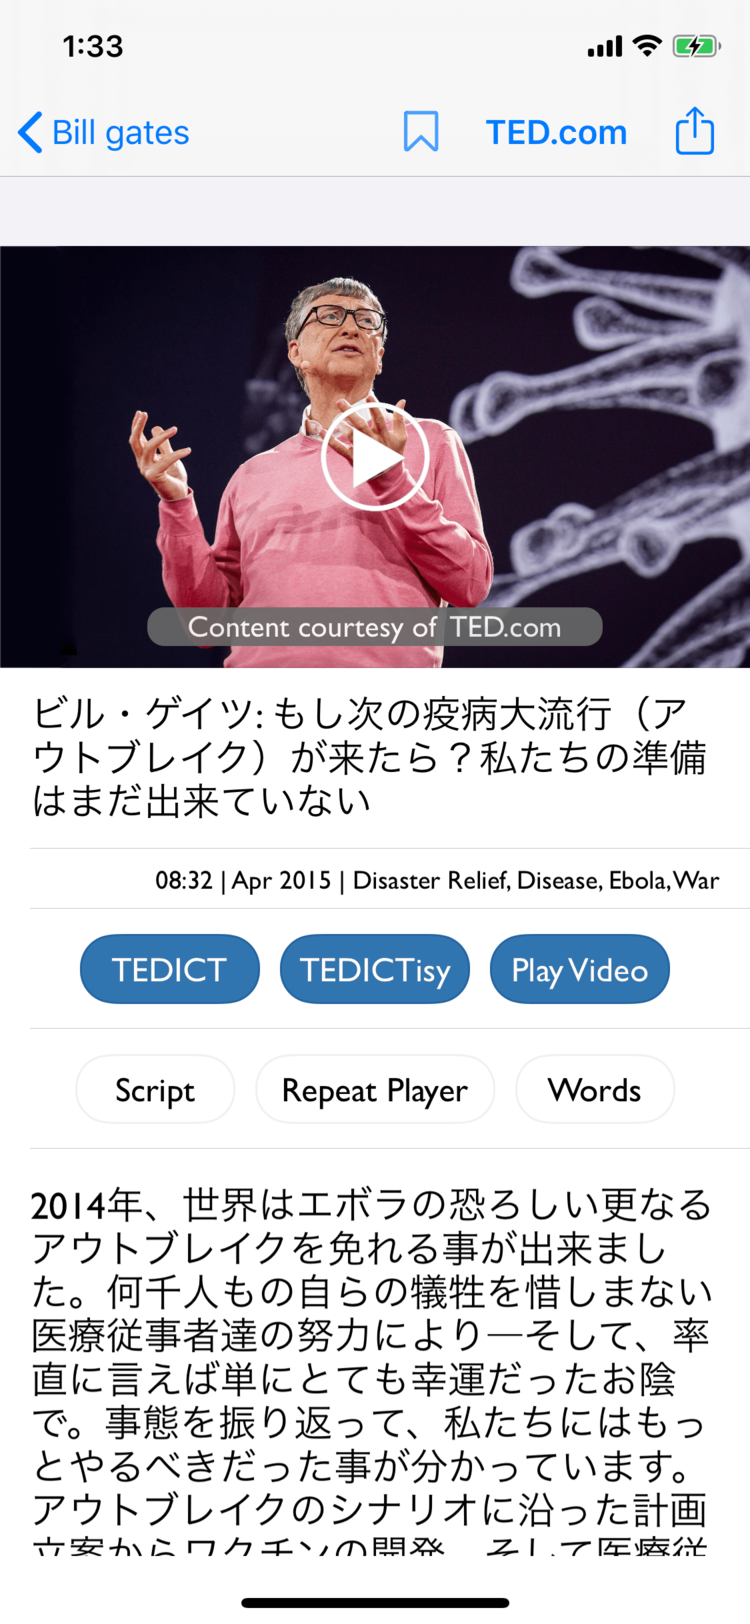 最高の独学アプリ Tedict で 世界最先端の知に触れながら英語を学ぶ 人生変えちゃうアプリ Wani Books Newscrunch ニュースクランチ